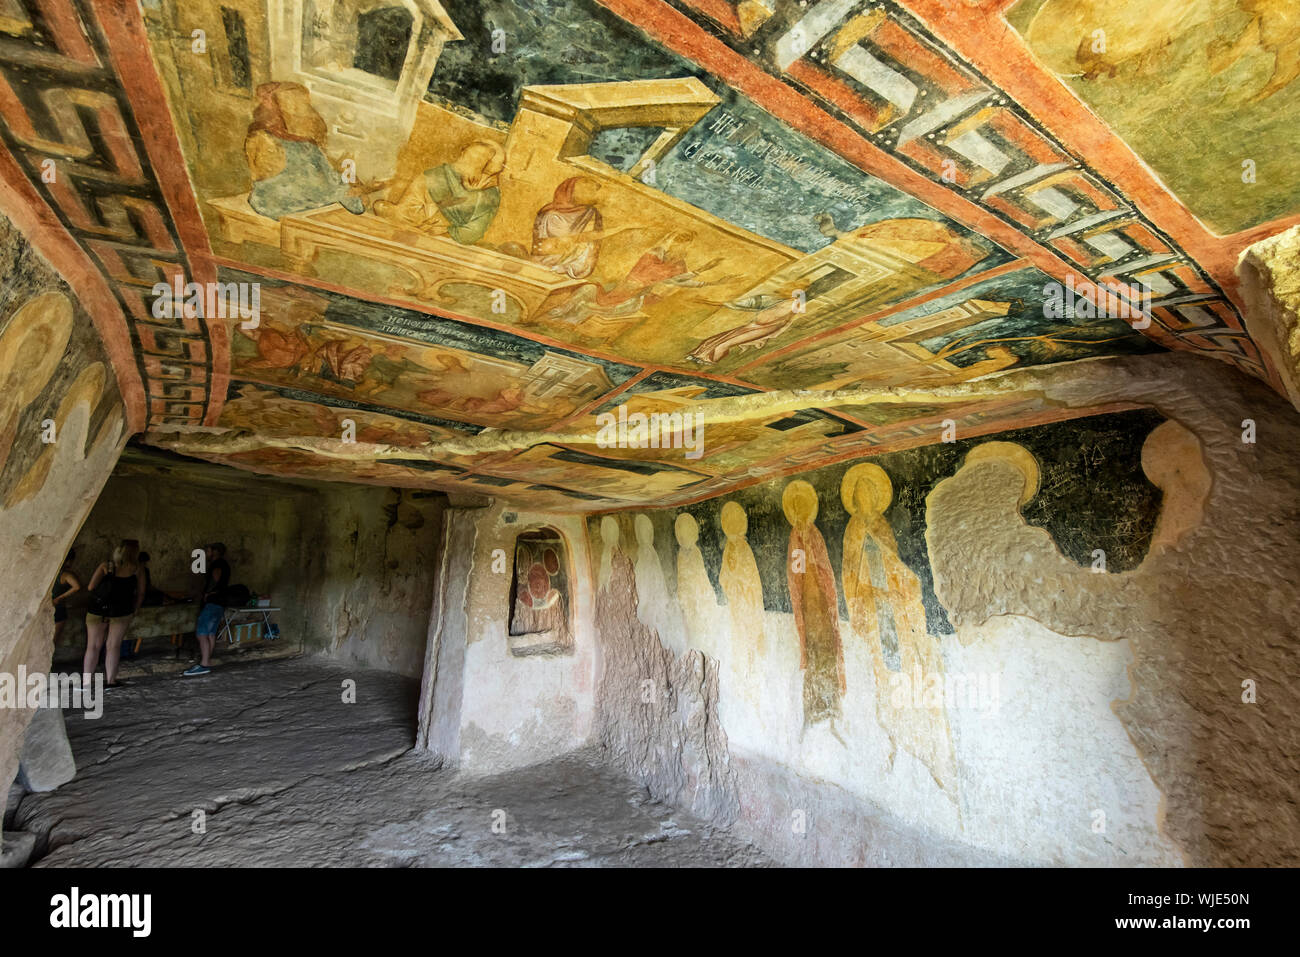 Gli affreschi all'interno della chiesa del rock-conci di Ivanovo monastero furono realizzati nel corso del XIV secolo. Un sito Patrimonio Mondiale dell'UNESCO. La Bulgaria Foto Stock